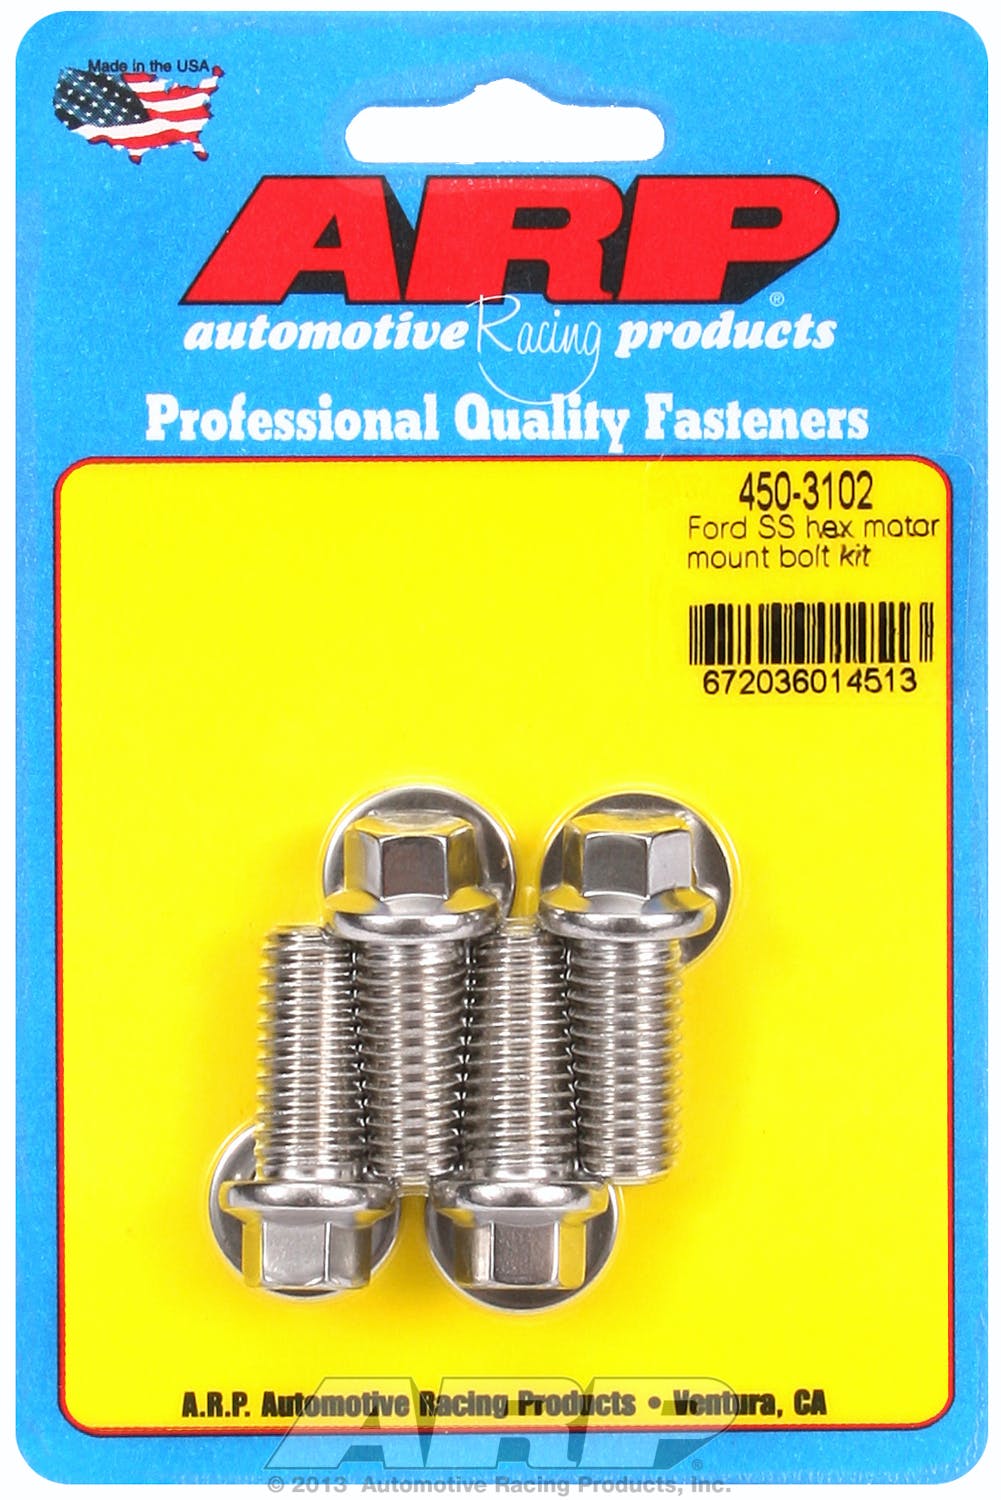 ARP 450-3102 Stainless Steel hex motor mount bolt kit